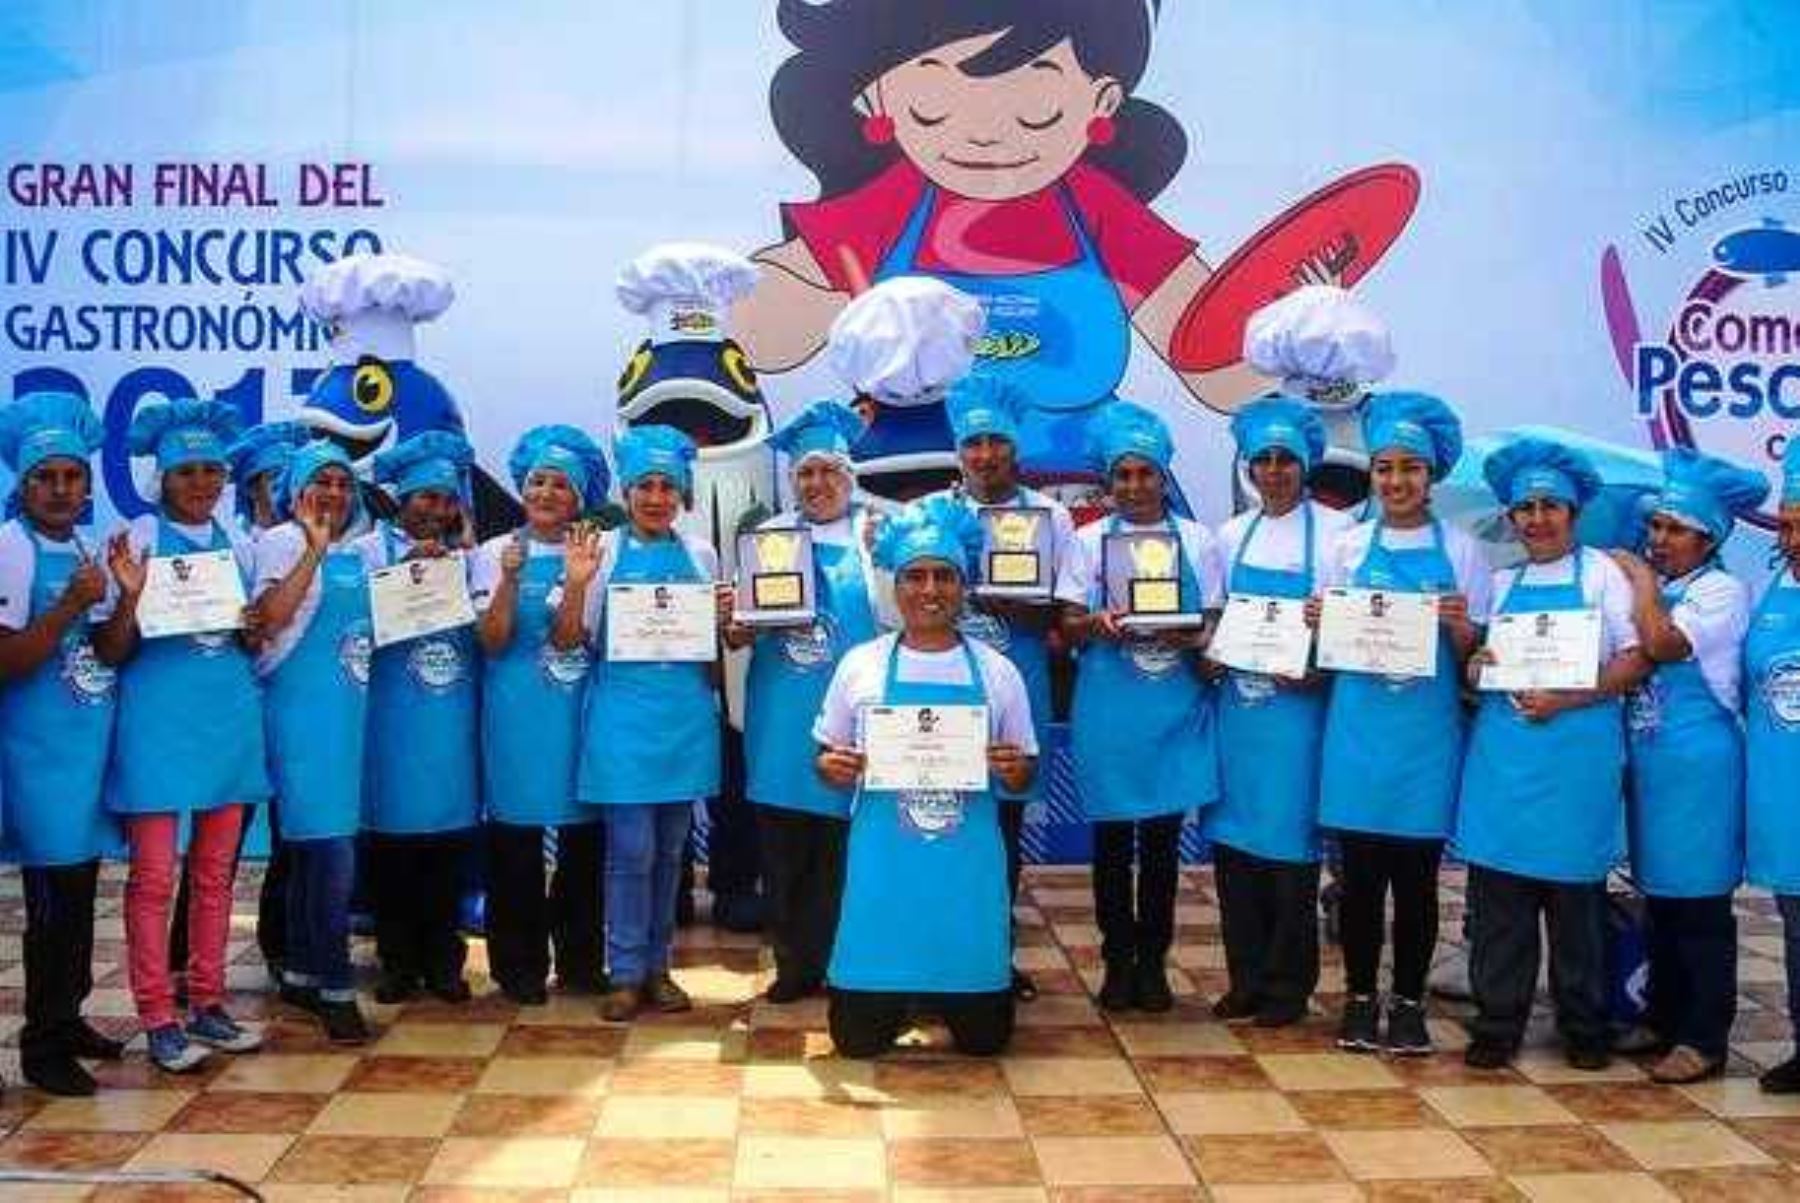 Concurso “Come Pescado con Todo” premiará a los talentos de la cocina. Foto: ANDINA/Difusión.